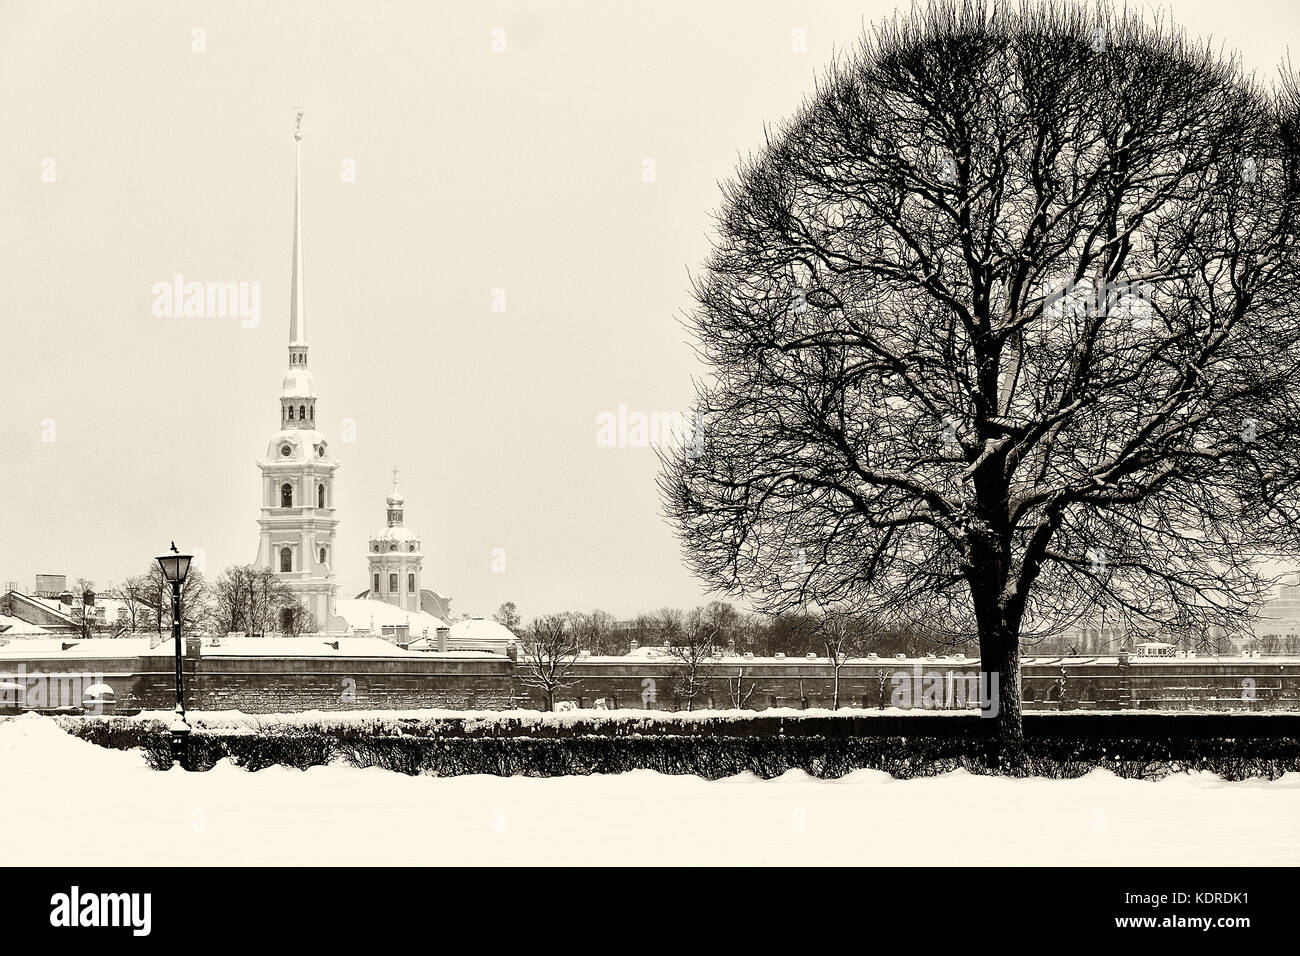 Monument touristique à saint Petersburg, Russie : la forteresse Pierre et Paul et de la cathédrale par une journée d'hiver avec beaucoup de neige autour. rétro noir et blanc p Banque D'Images